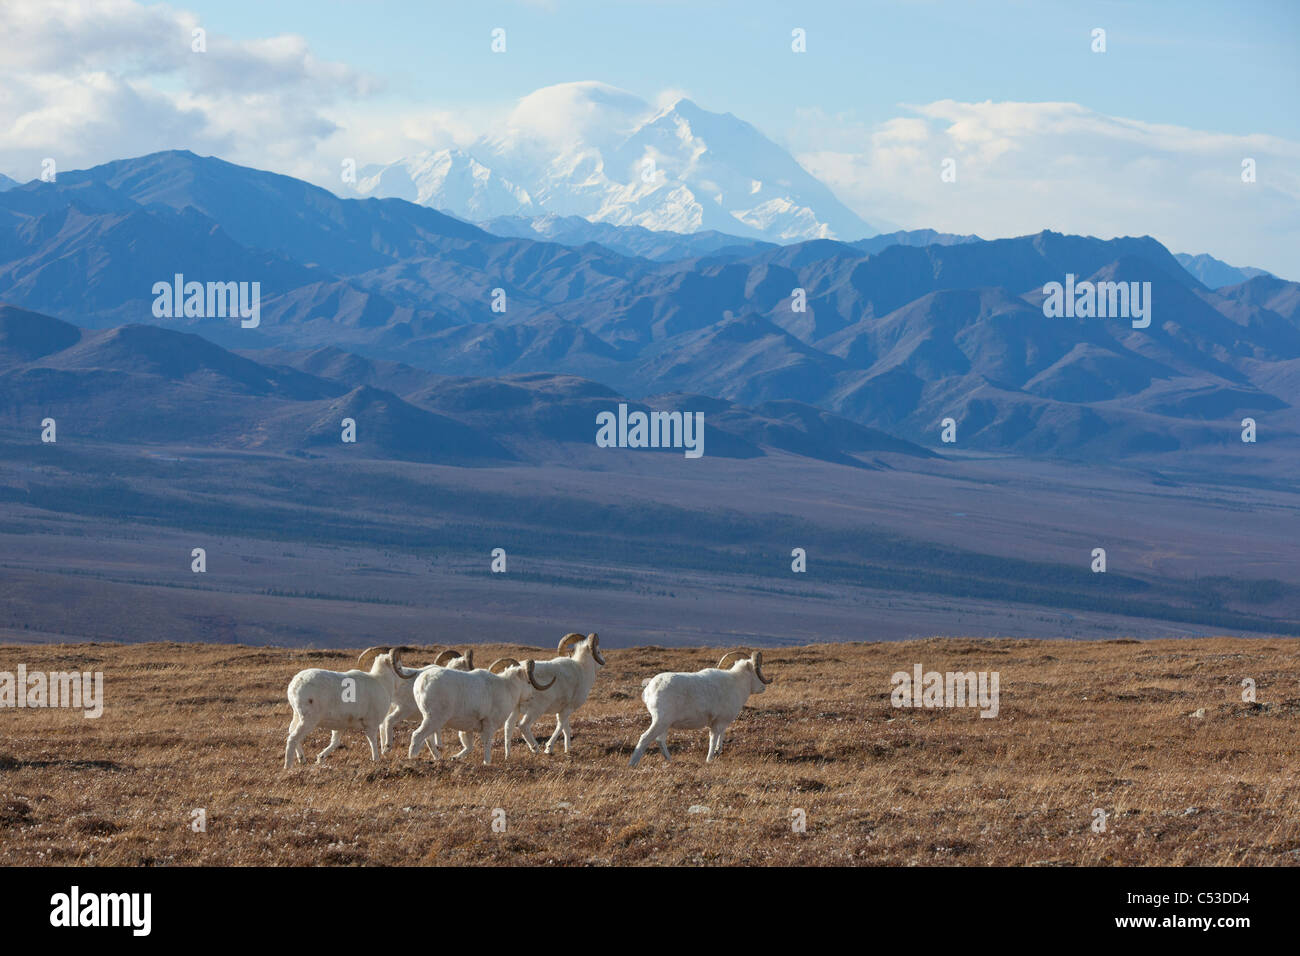 Banda de Dall sheep ram data y pastan en una pradera de alta montaña con Mt. McKinley en el fondo, interior de Alaska Foto de stock